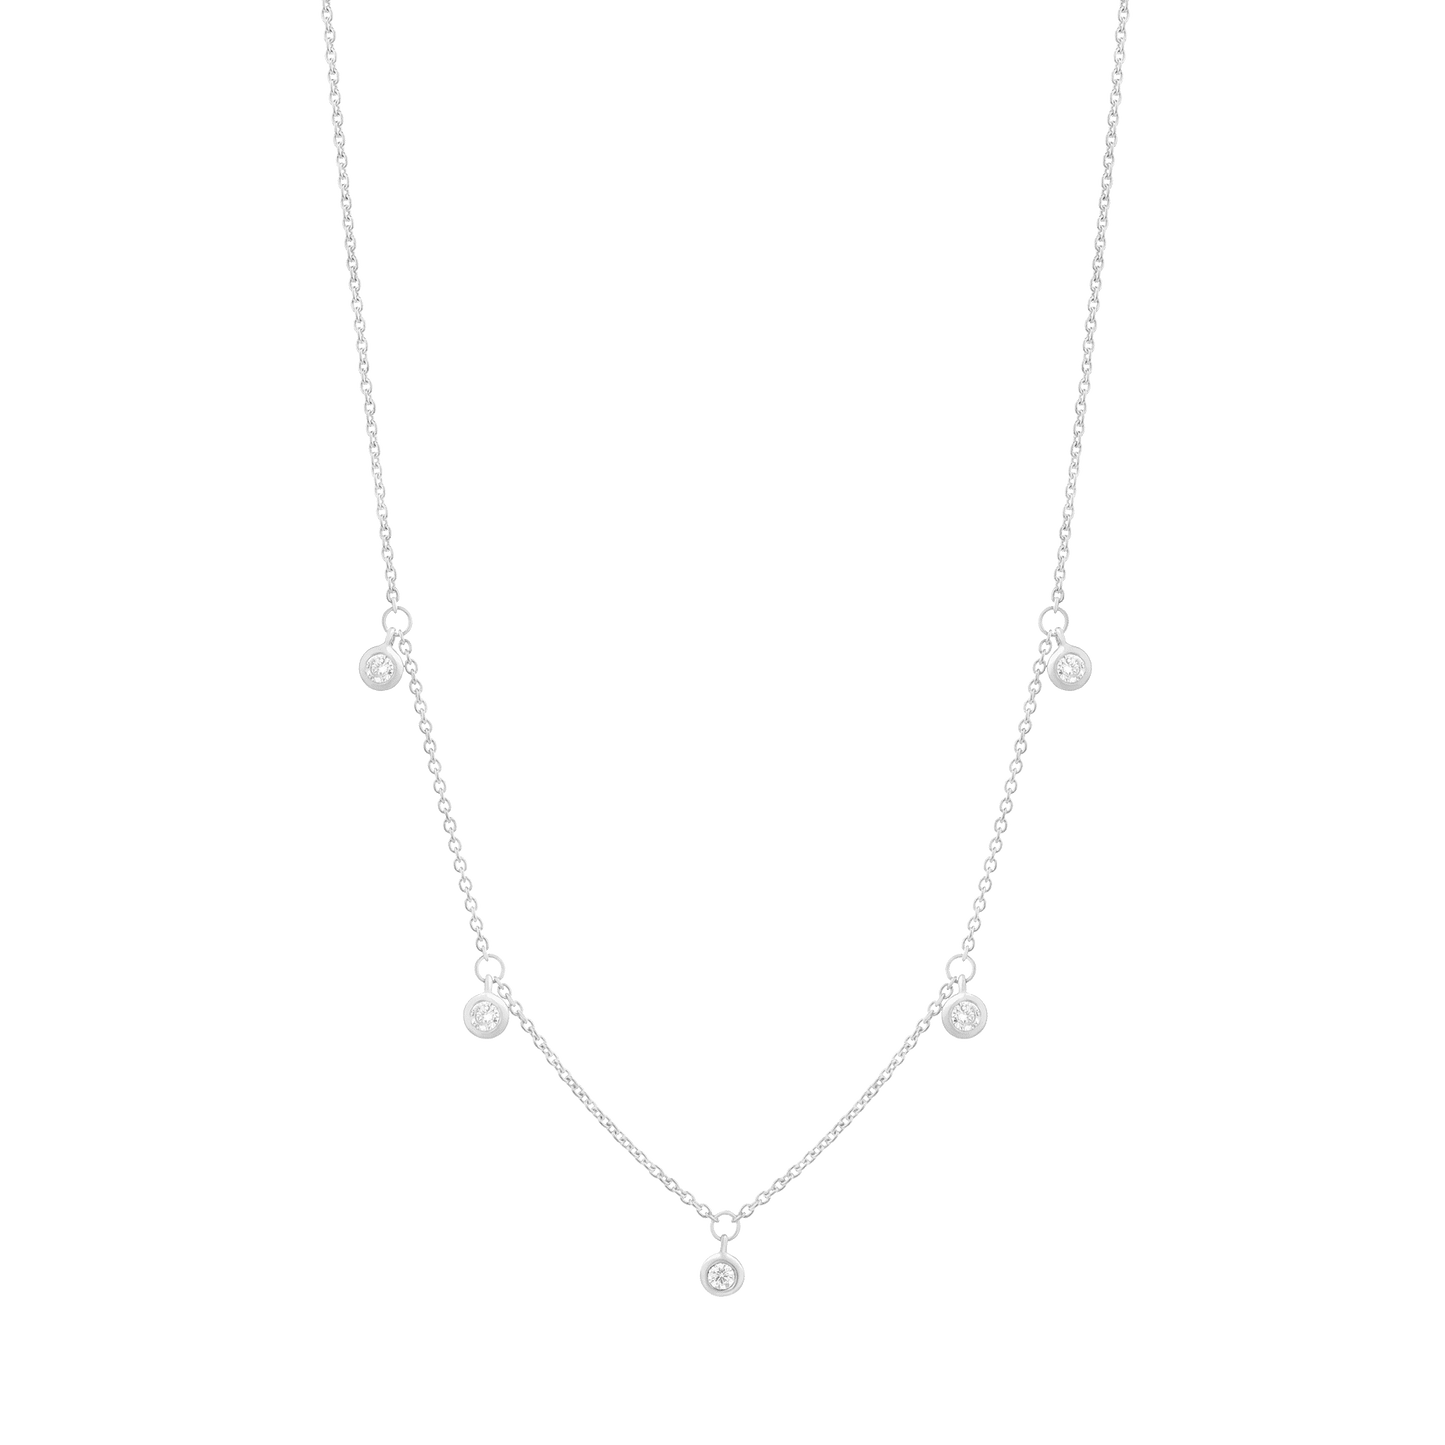 5 Diamonds Bezel Necklace - 18K Gold Vermeil Necklaces magal-dev 